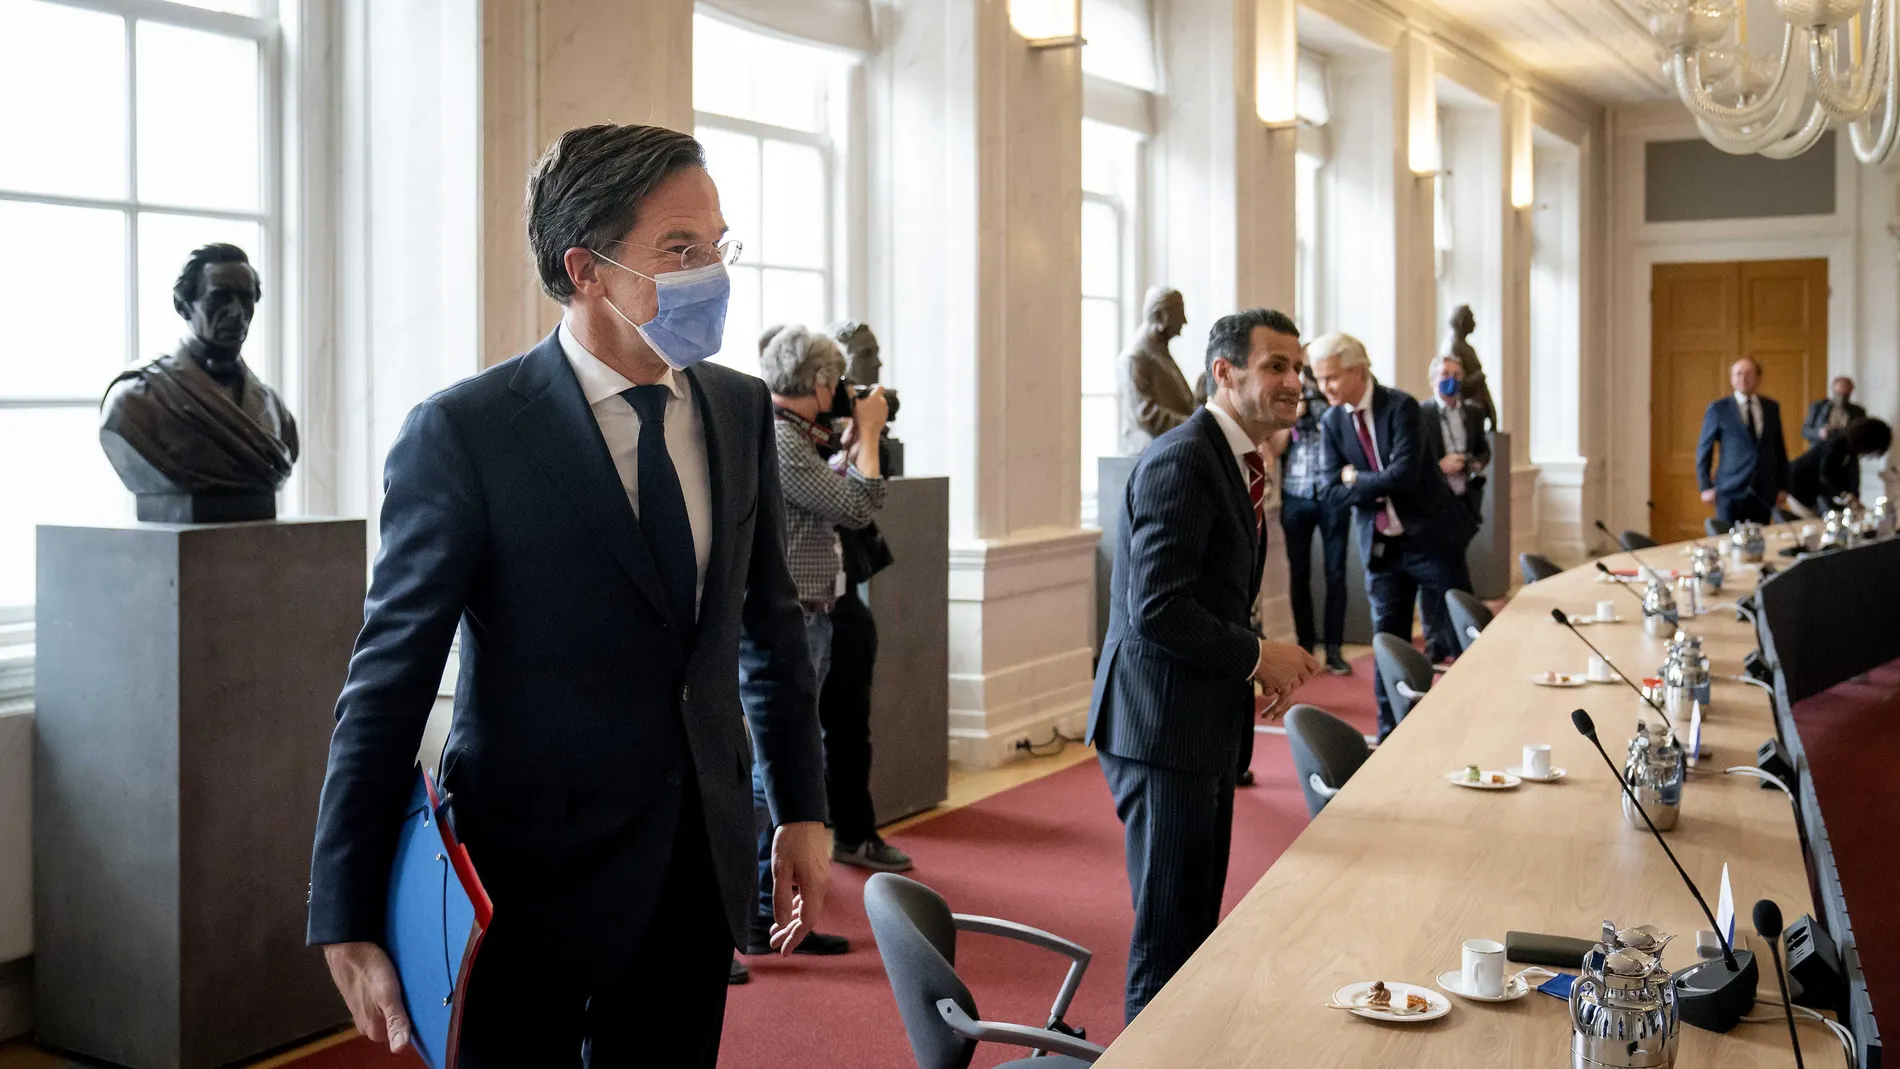 El líder liberal holandés, Mark Rutte, se ha reunido esta mañana con la presidenta del Parlamento, Khadija Arib